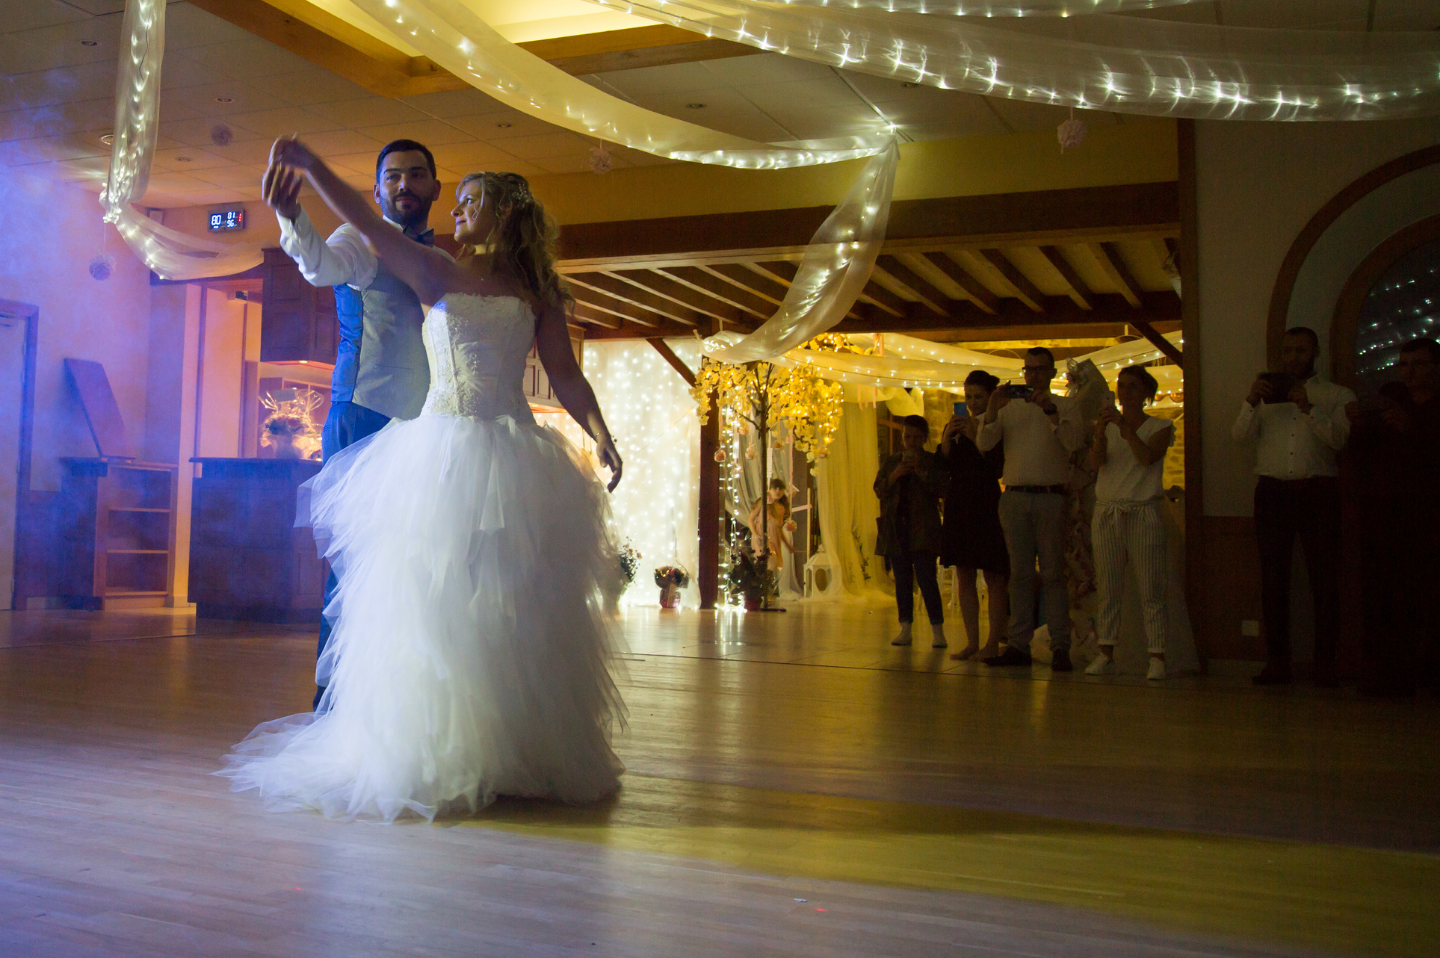 studio grand angle - photographe professionnel mariage - soirée - danse mariés @christophe roisnel - cherbourg - equeurdreville - valognes - les pieux - normandie - cotentin - manche